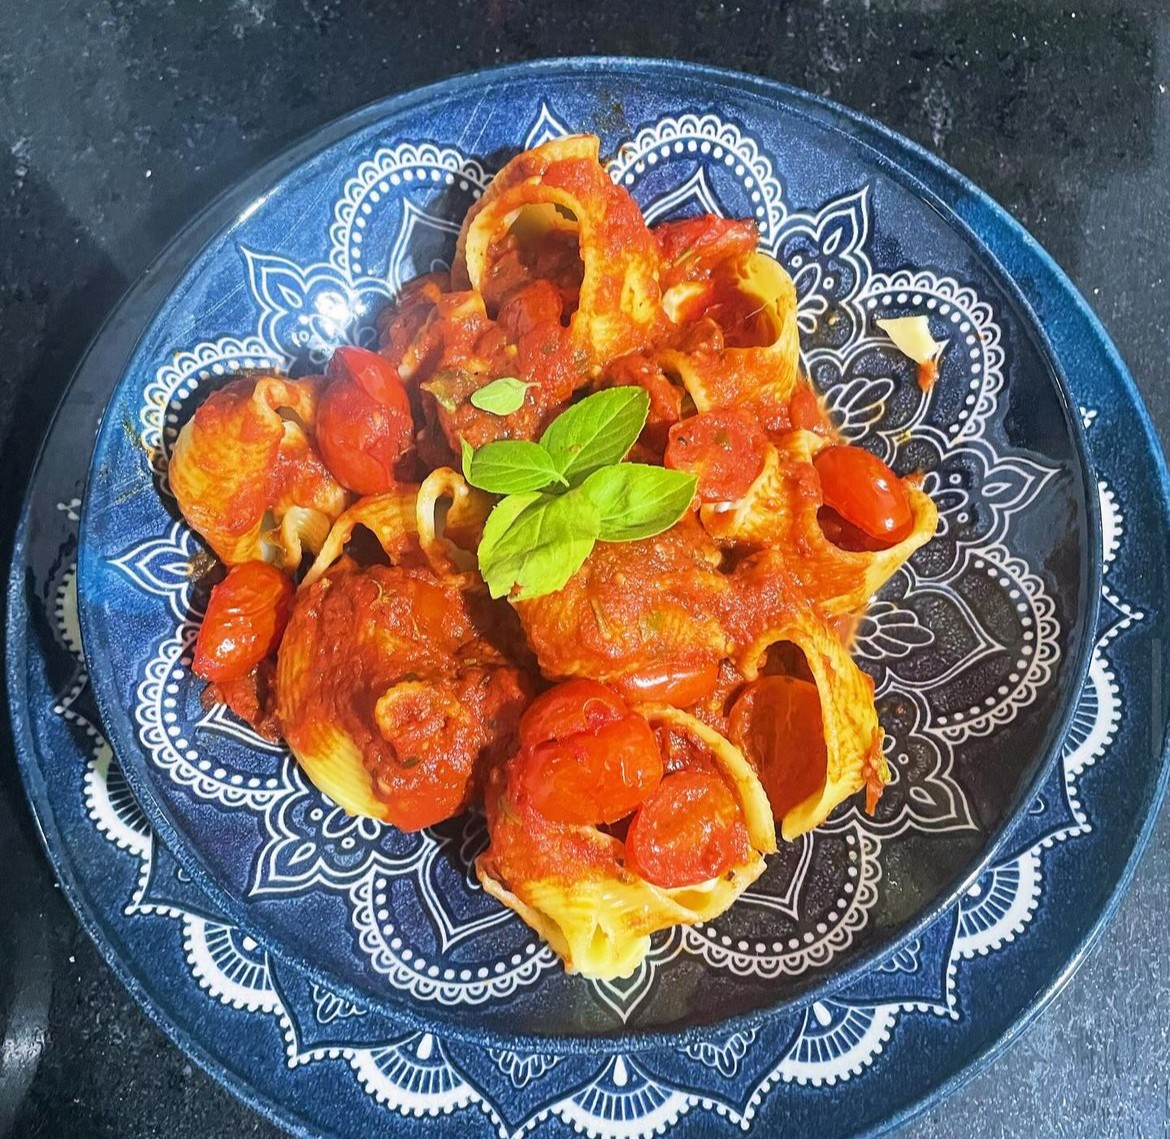 O conchiglione, um macarrão italiano em formato de concha, recheado com mozarela de búfala, tomate confitado e manjericão, é um dos sucessos do Cinque Terre — Foto: Divulgação